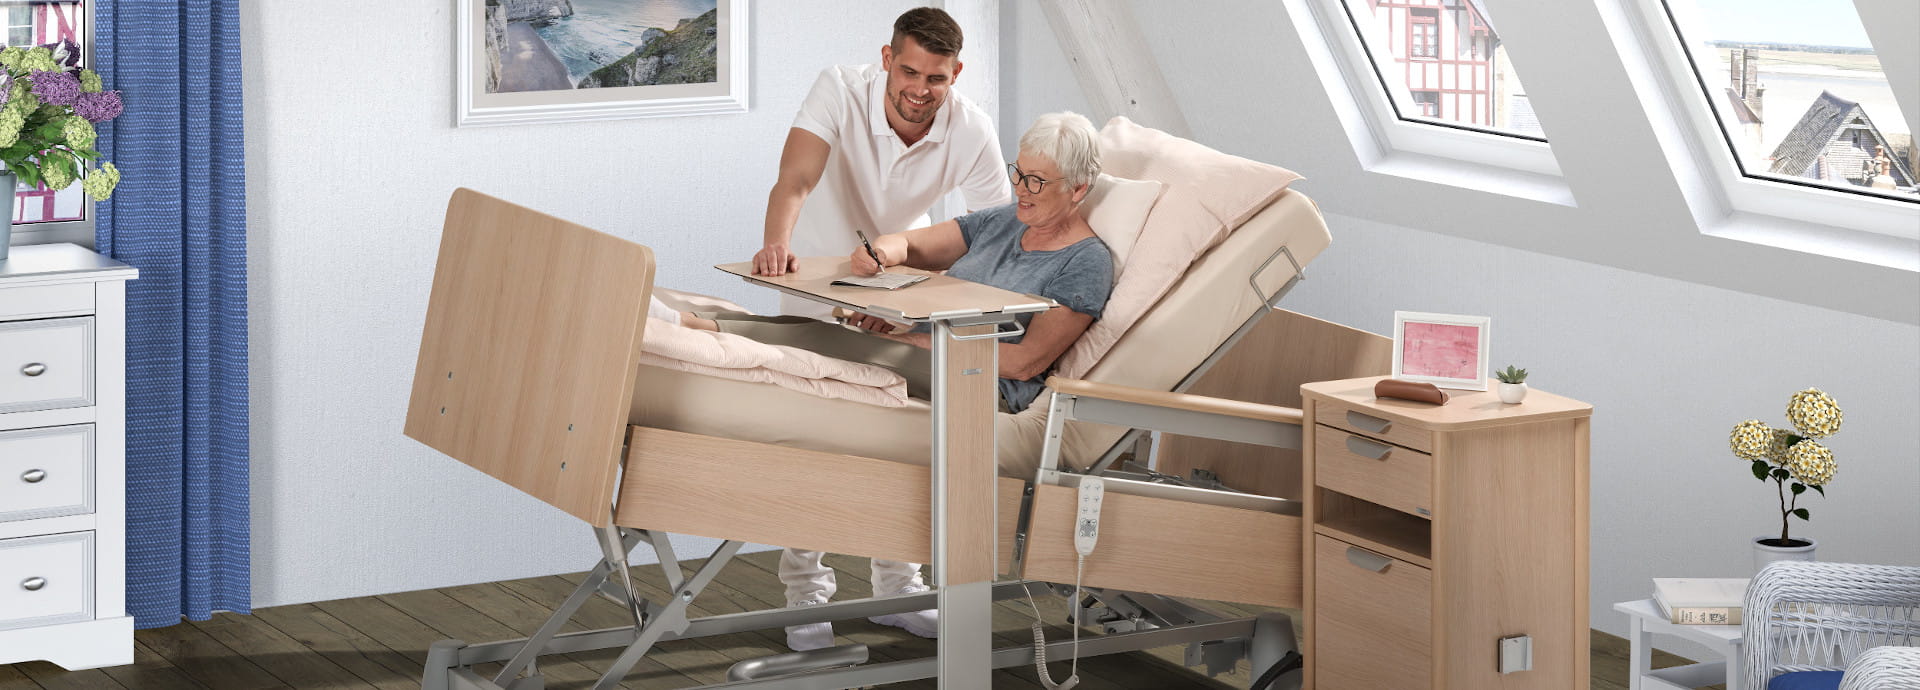 Das Pflegebett carisma sc ist die Lösung für Altenheime, die nach Funktionalität und Komfort streben.